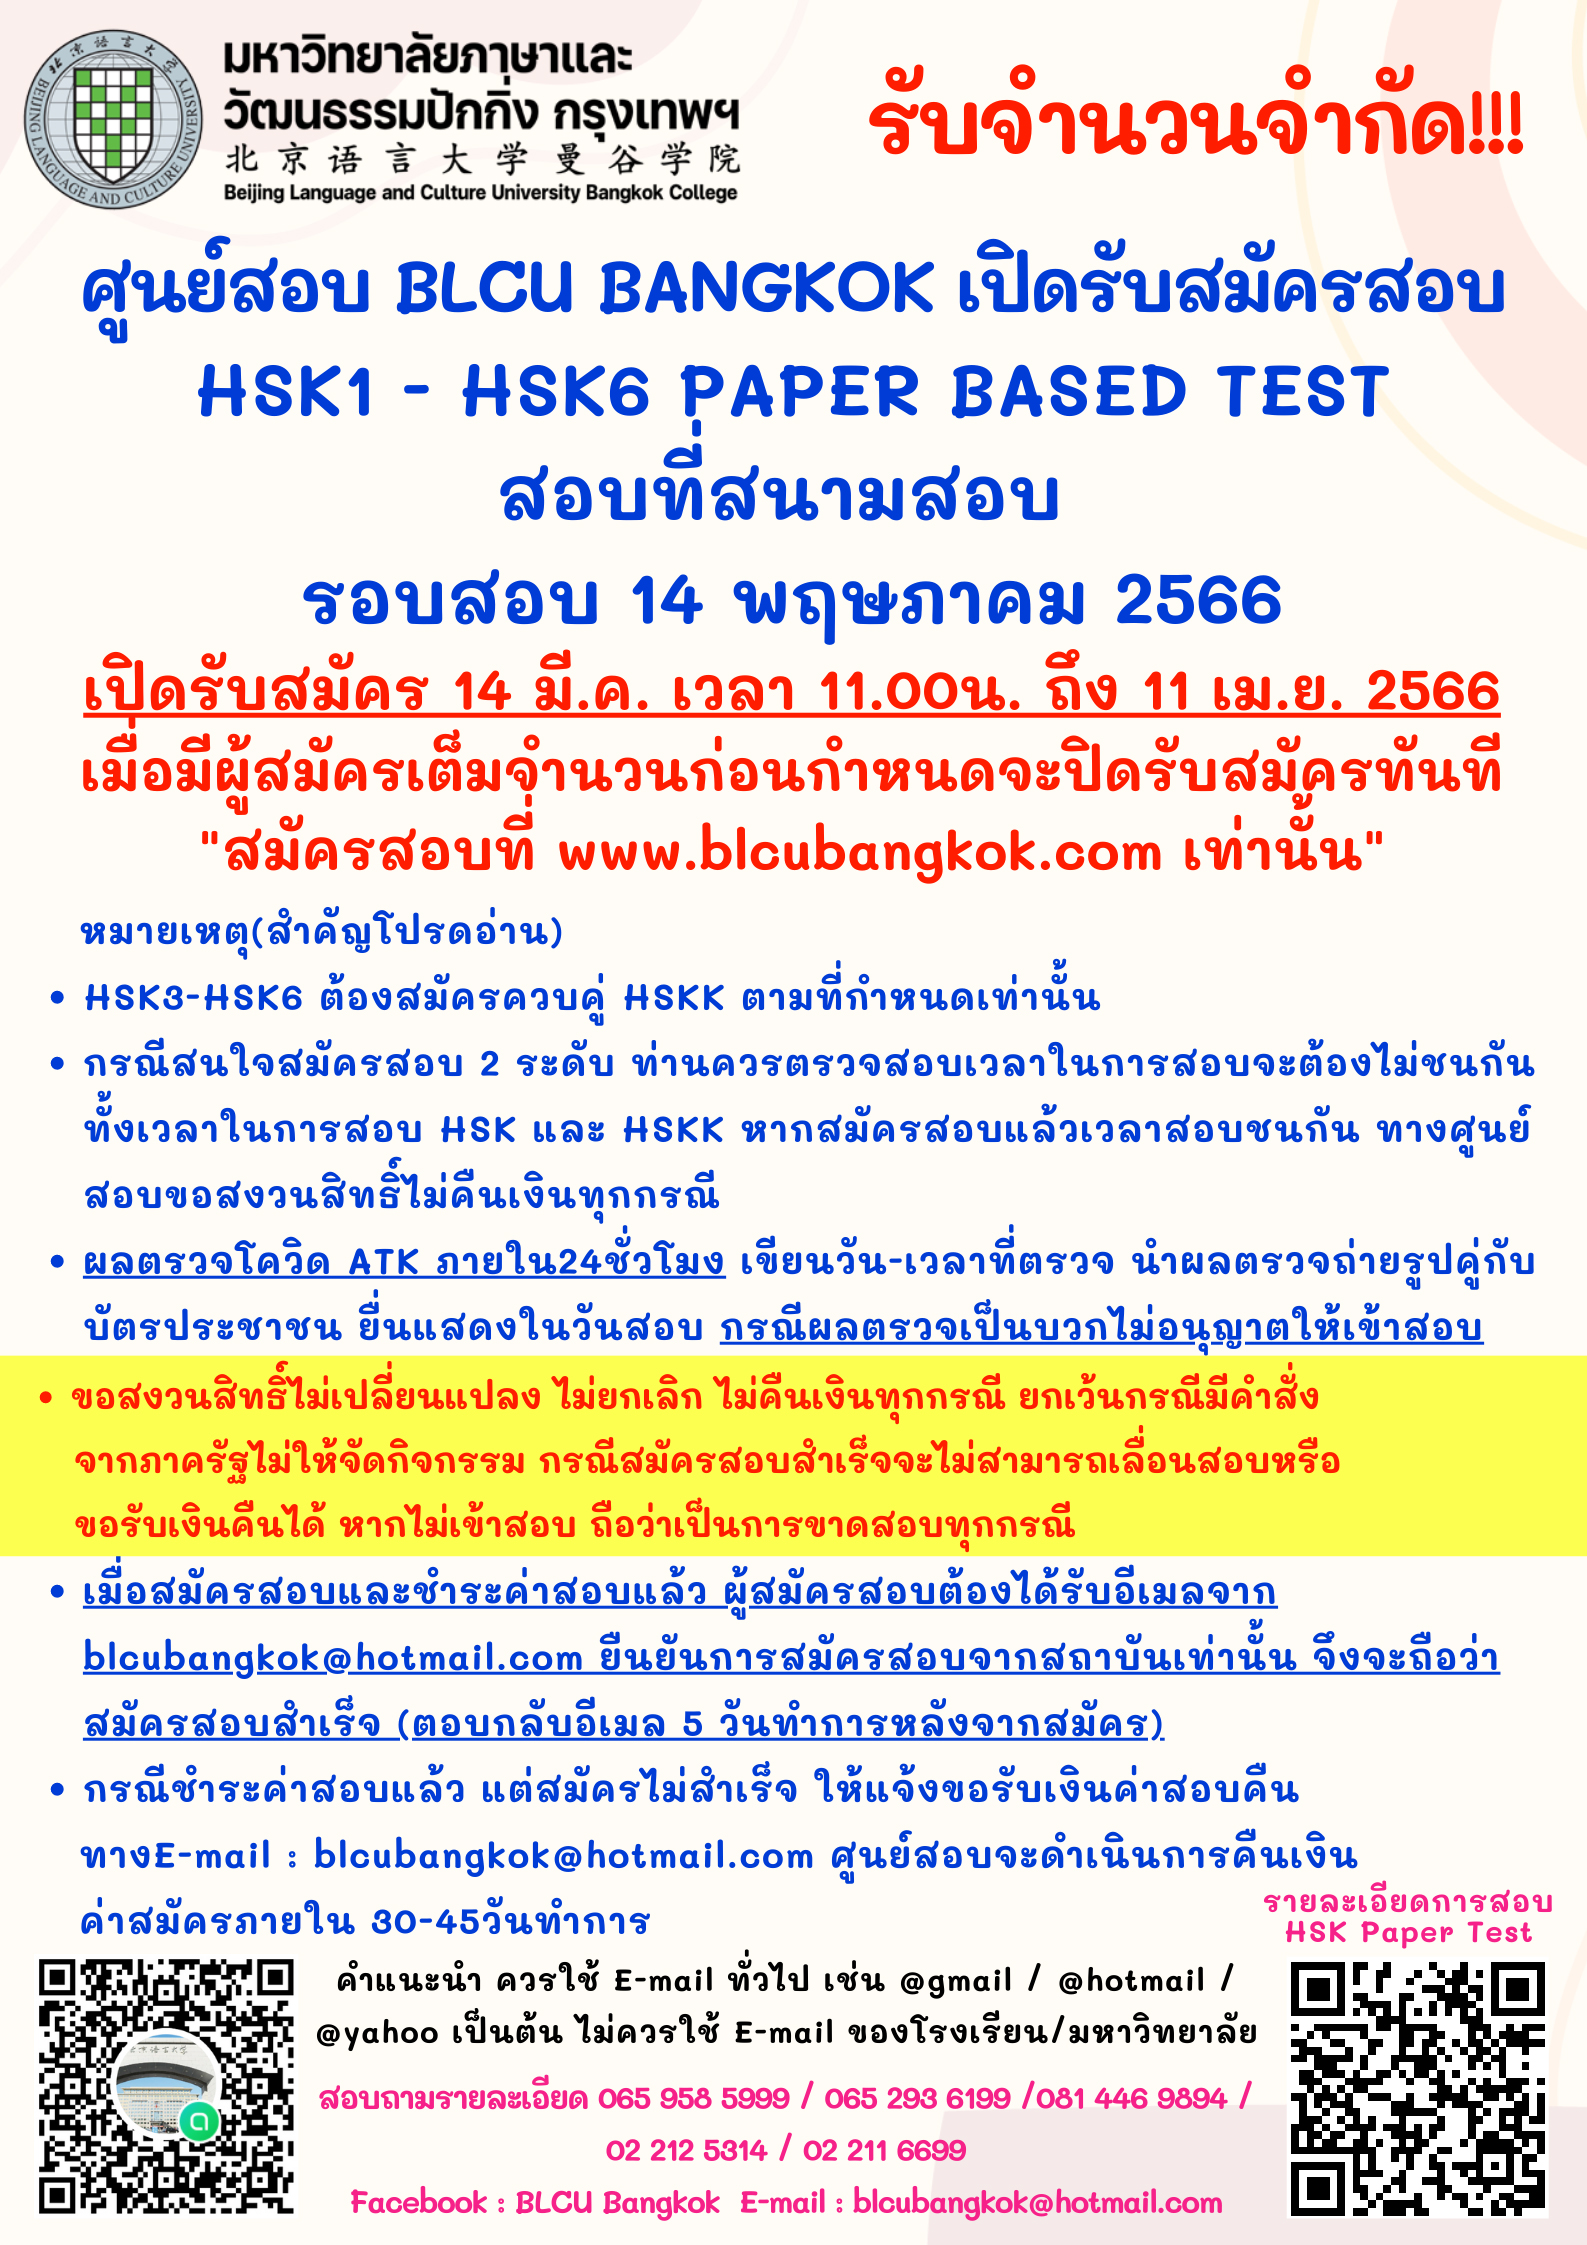 กำหนดวันสอบ HSK ครั้งที่ 4 ประจำปี 2566 วันอาทิตย์ที่ 14 พฤษภาคม 2566 (Paper based test สอบที่สนามสอบ)